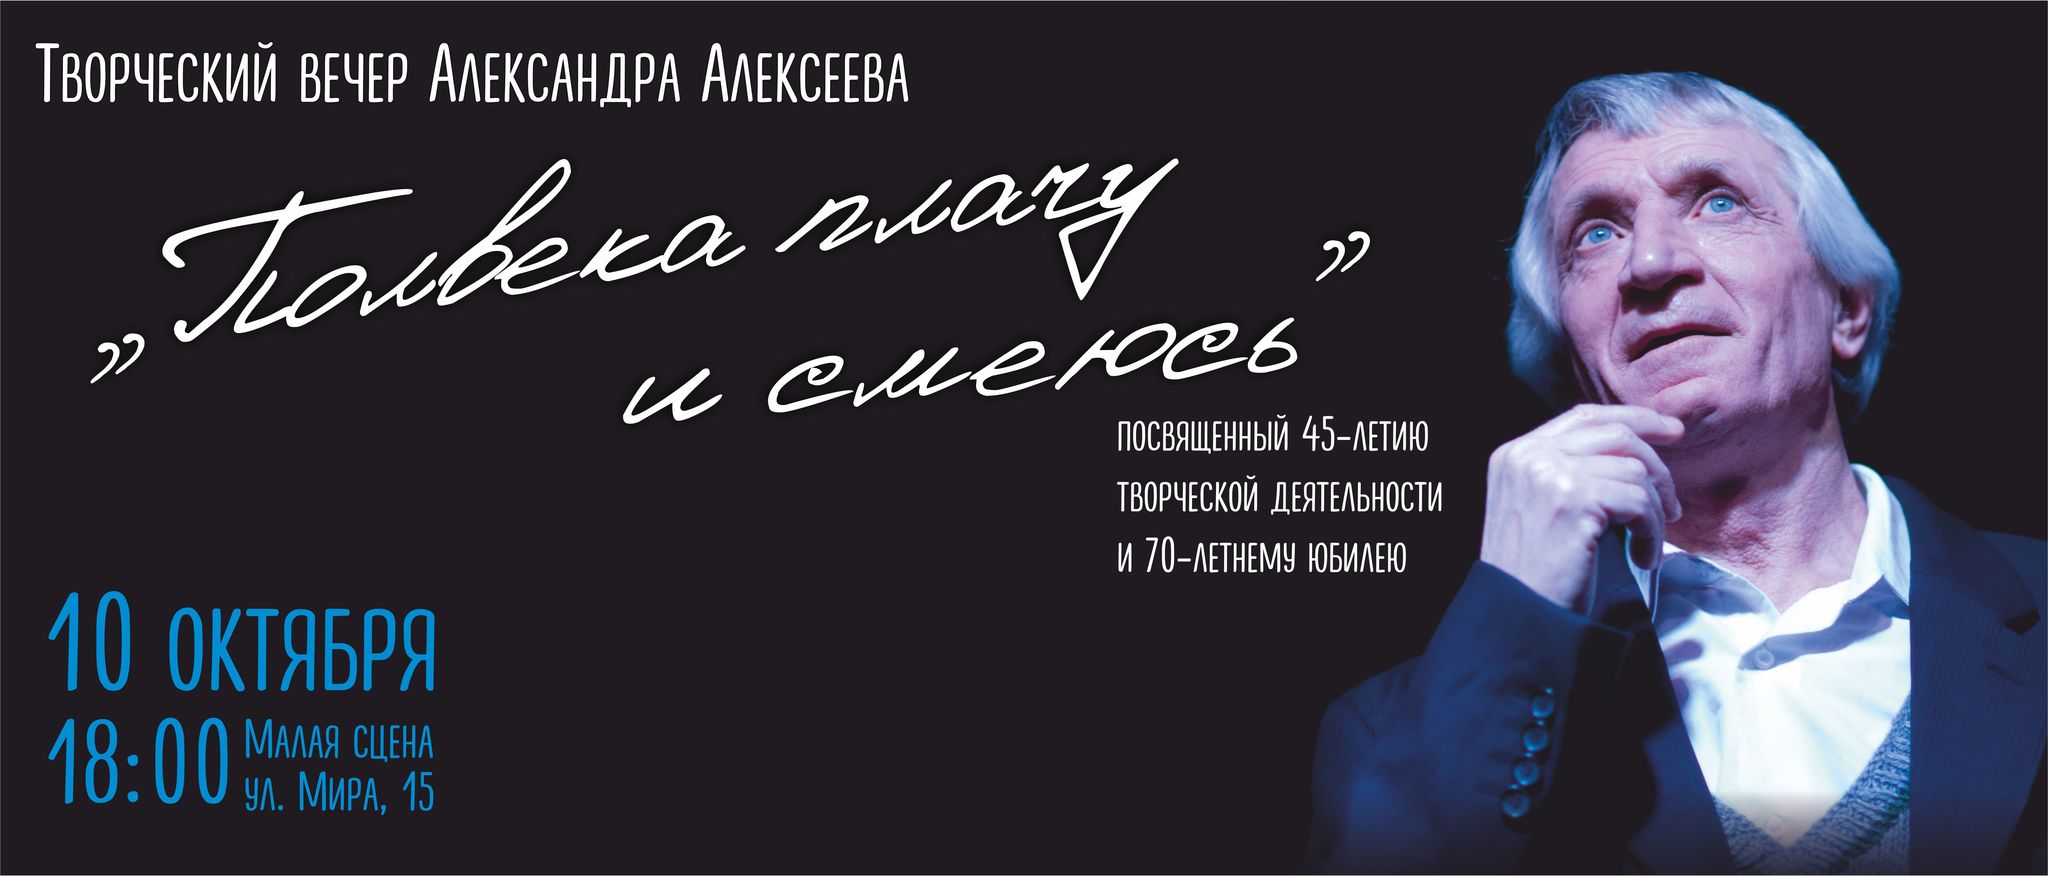 Творческий вечер актёра Александра Алексеева состоится в Ханты-Мансийском театре кукол